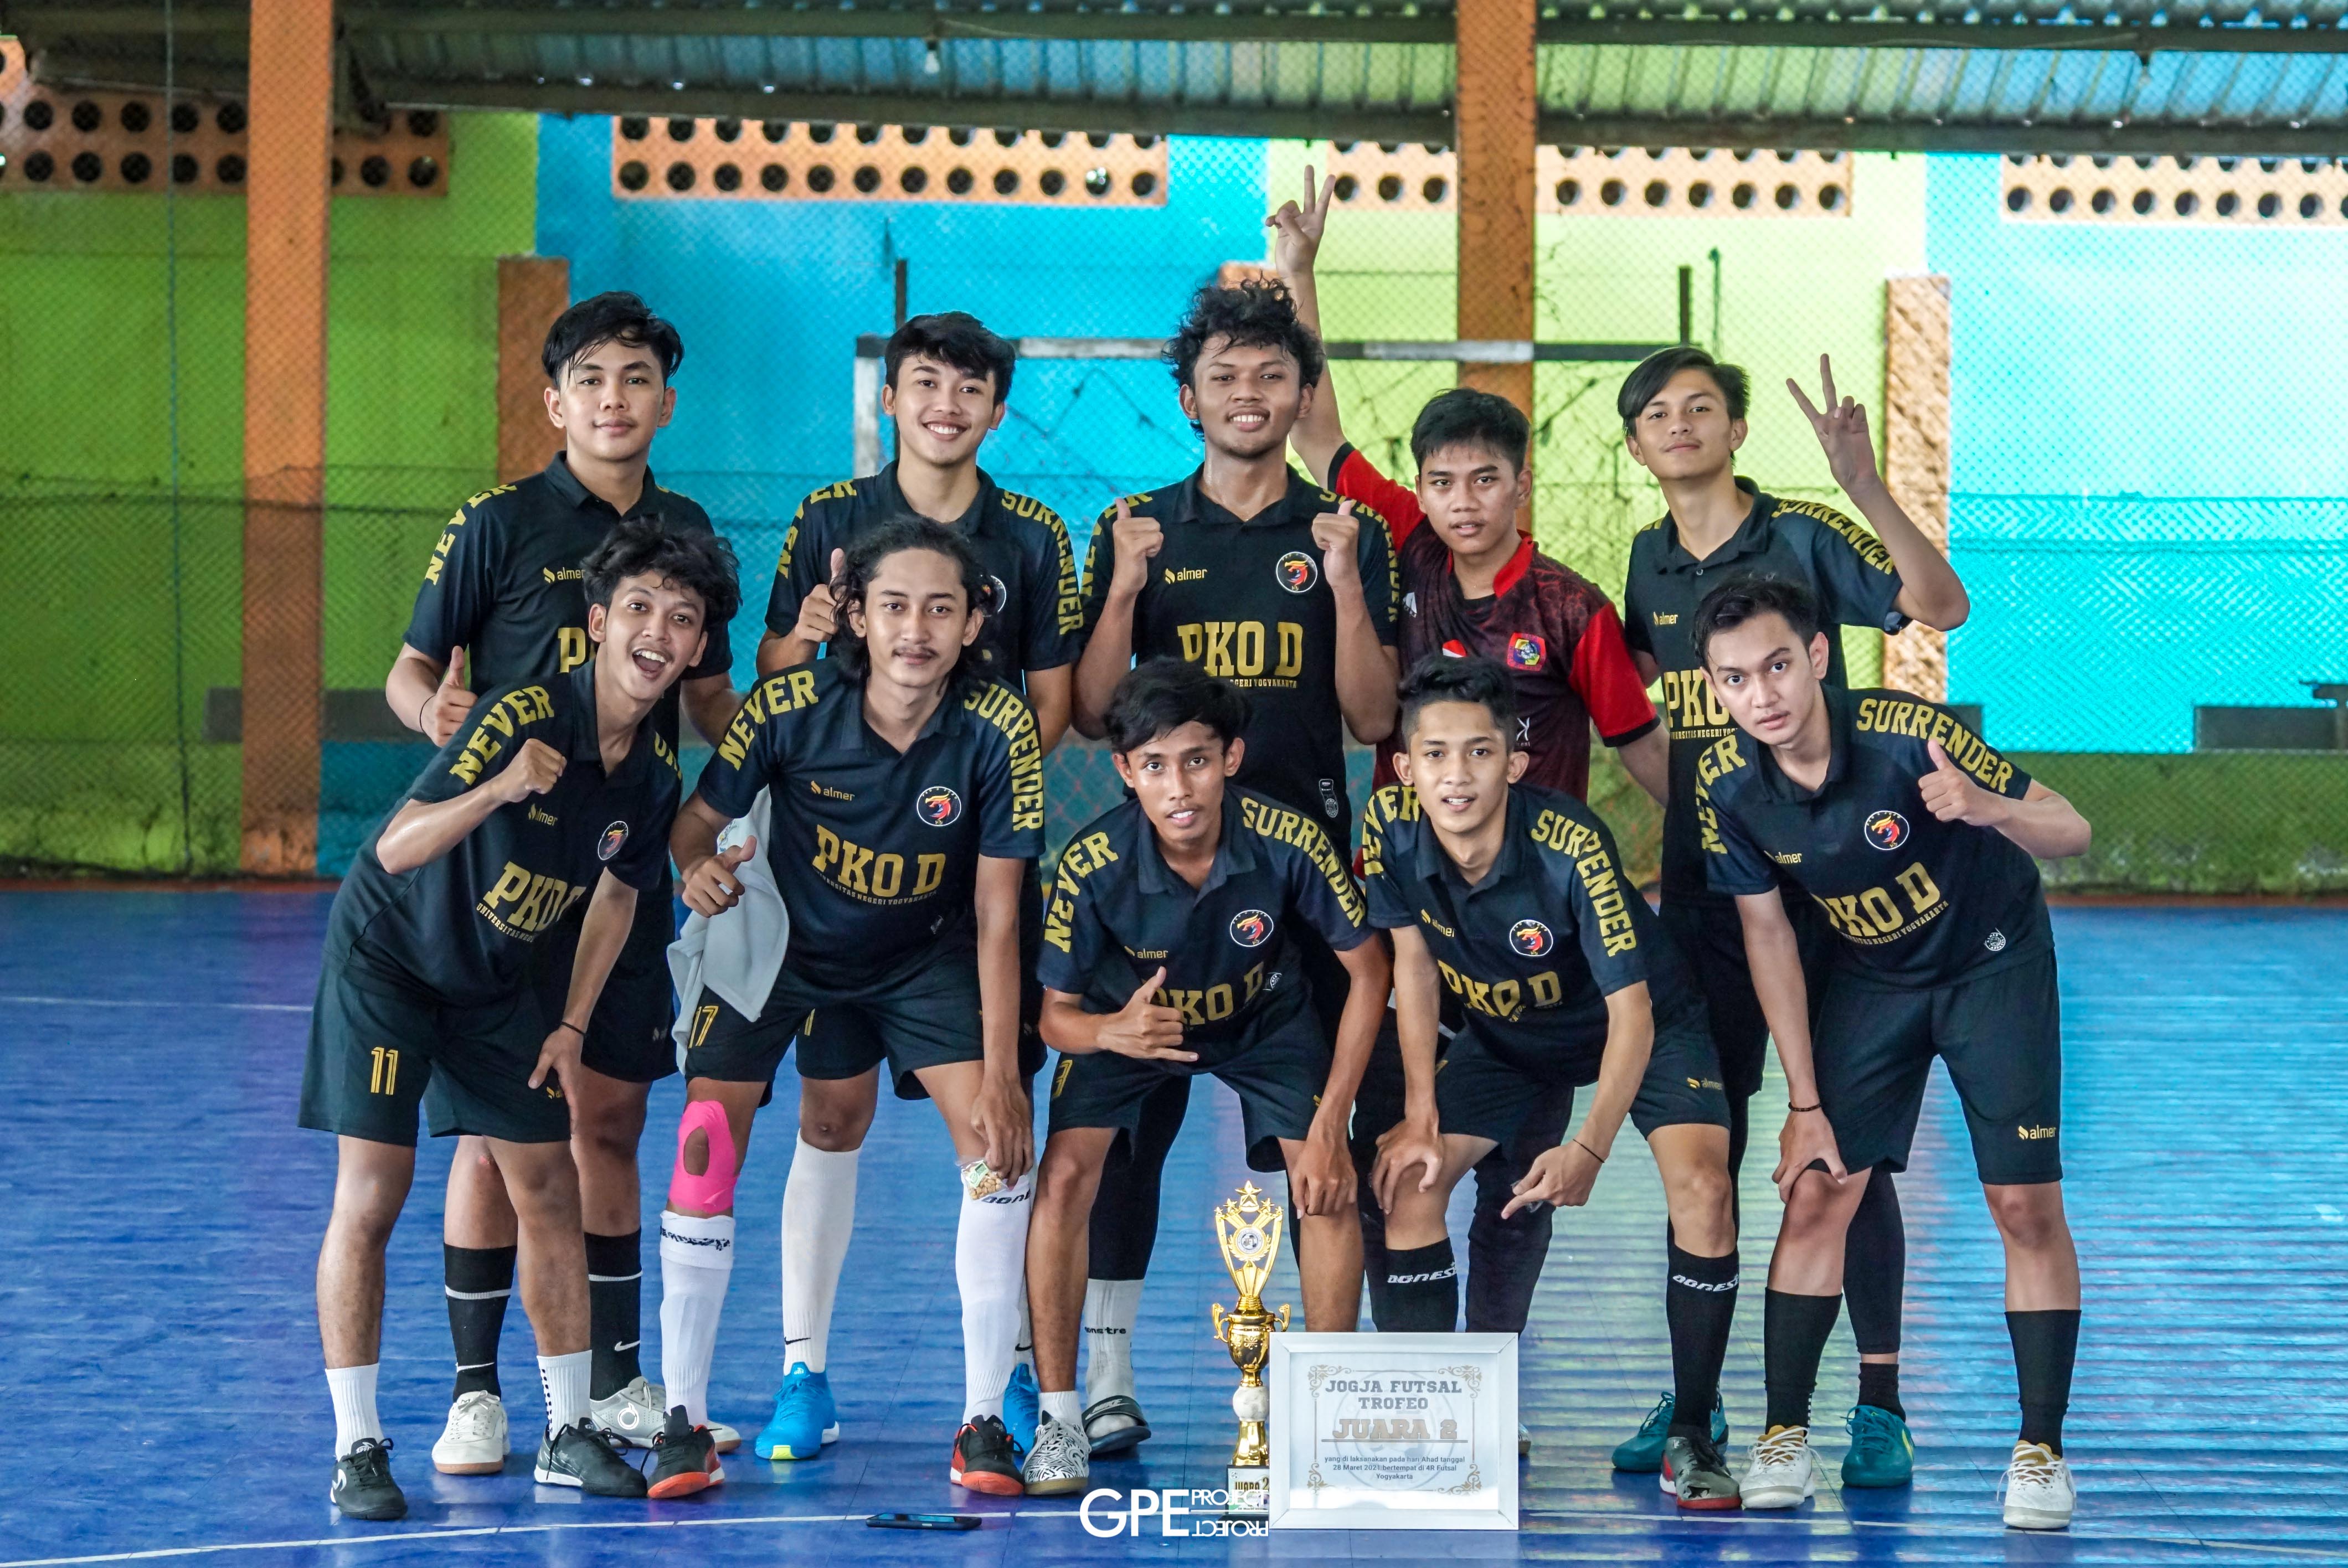 Foto Jogja Futsal Trofeo